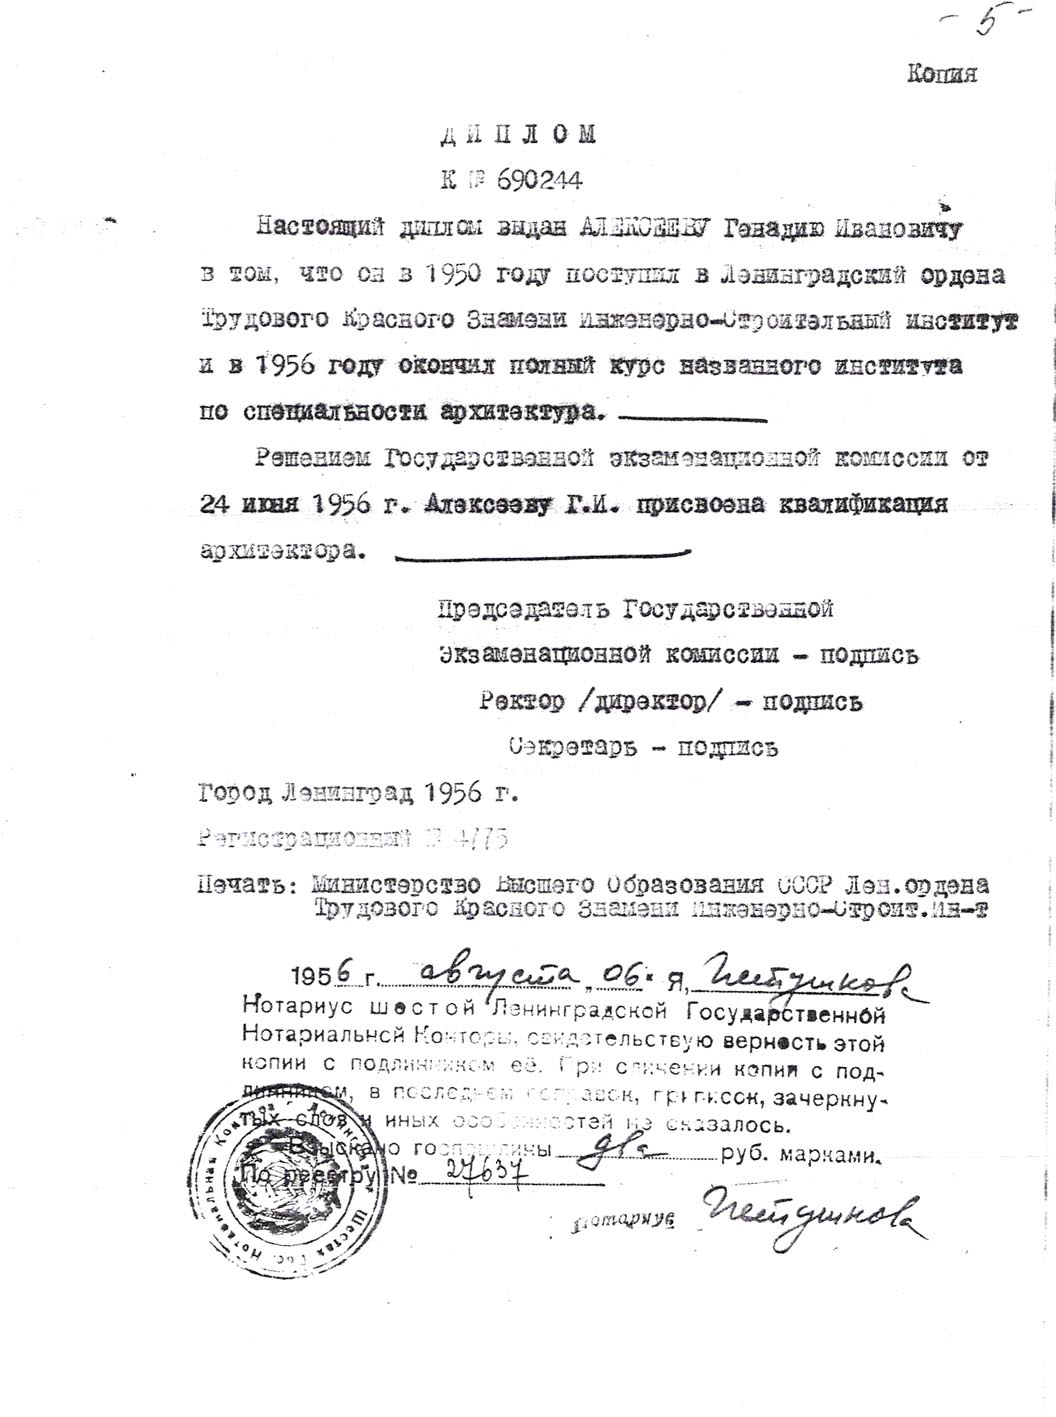 Диплом Г.Алексеева. 1956г.